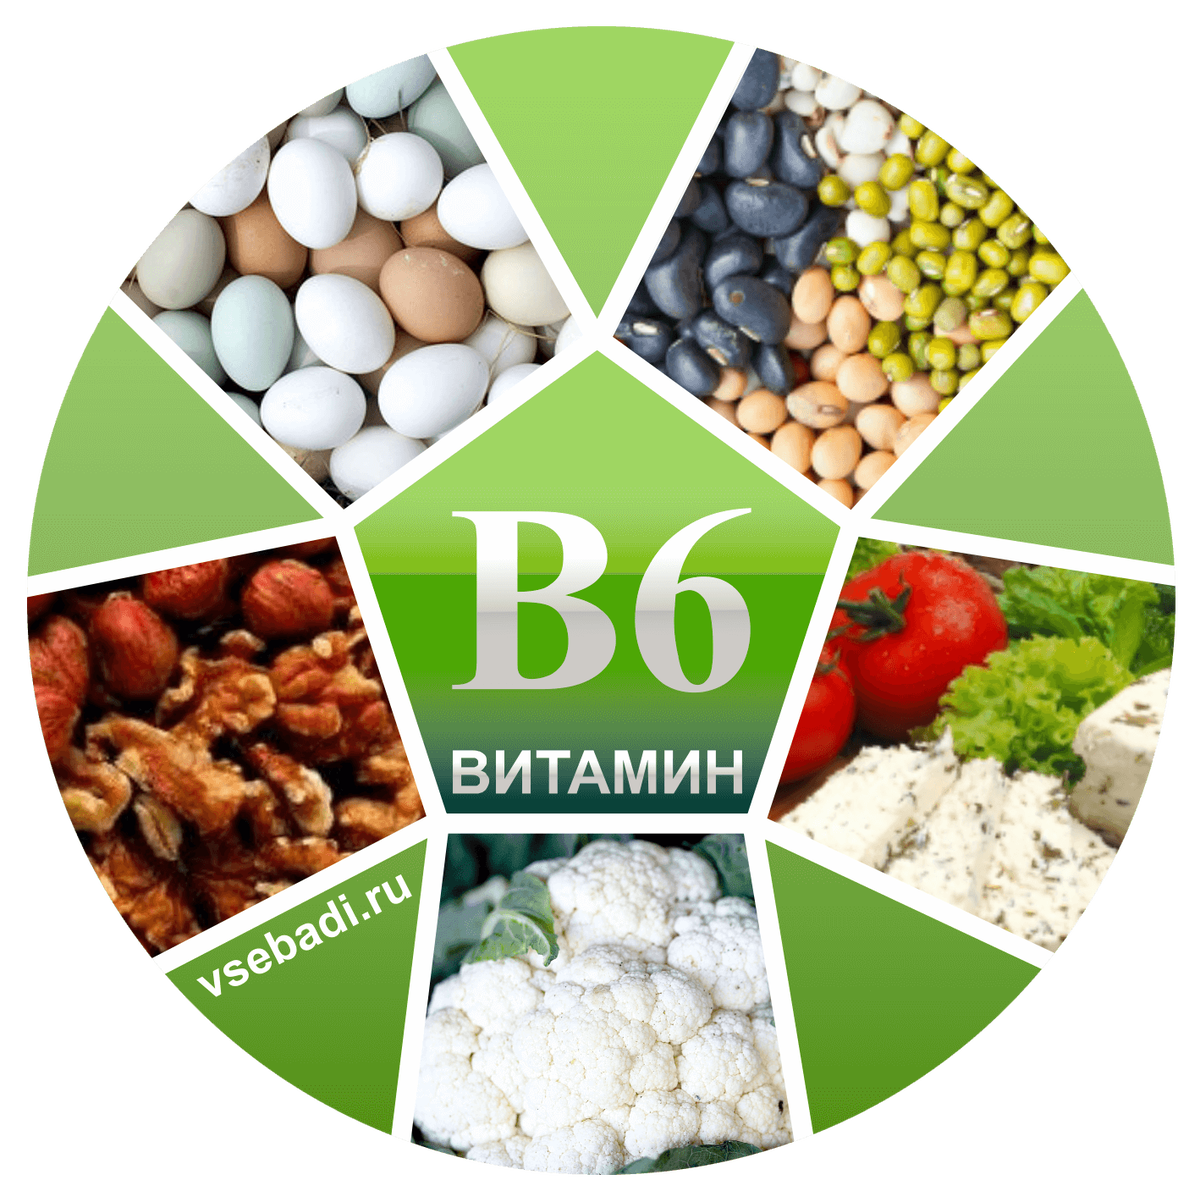 Б6 в сутки. Витамин b6 название витамина. Витамины группы б6. Витамин b6 пиридоксин. Витамин b6 источники витамина.